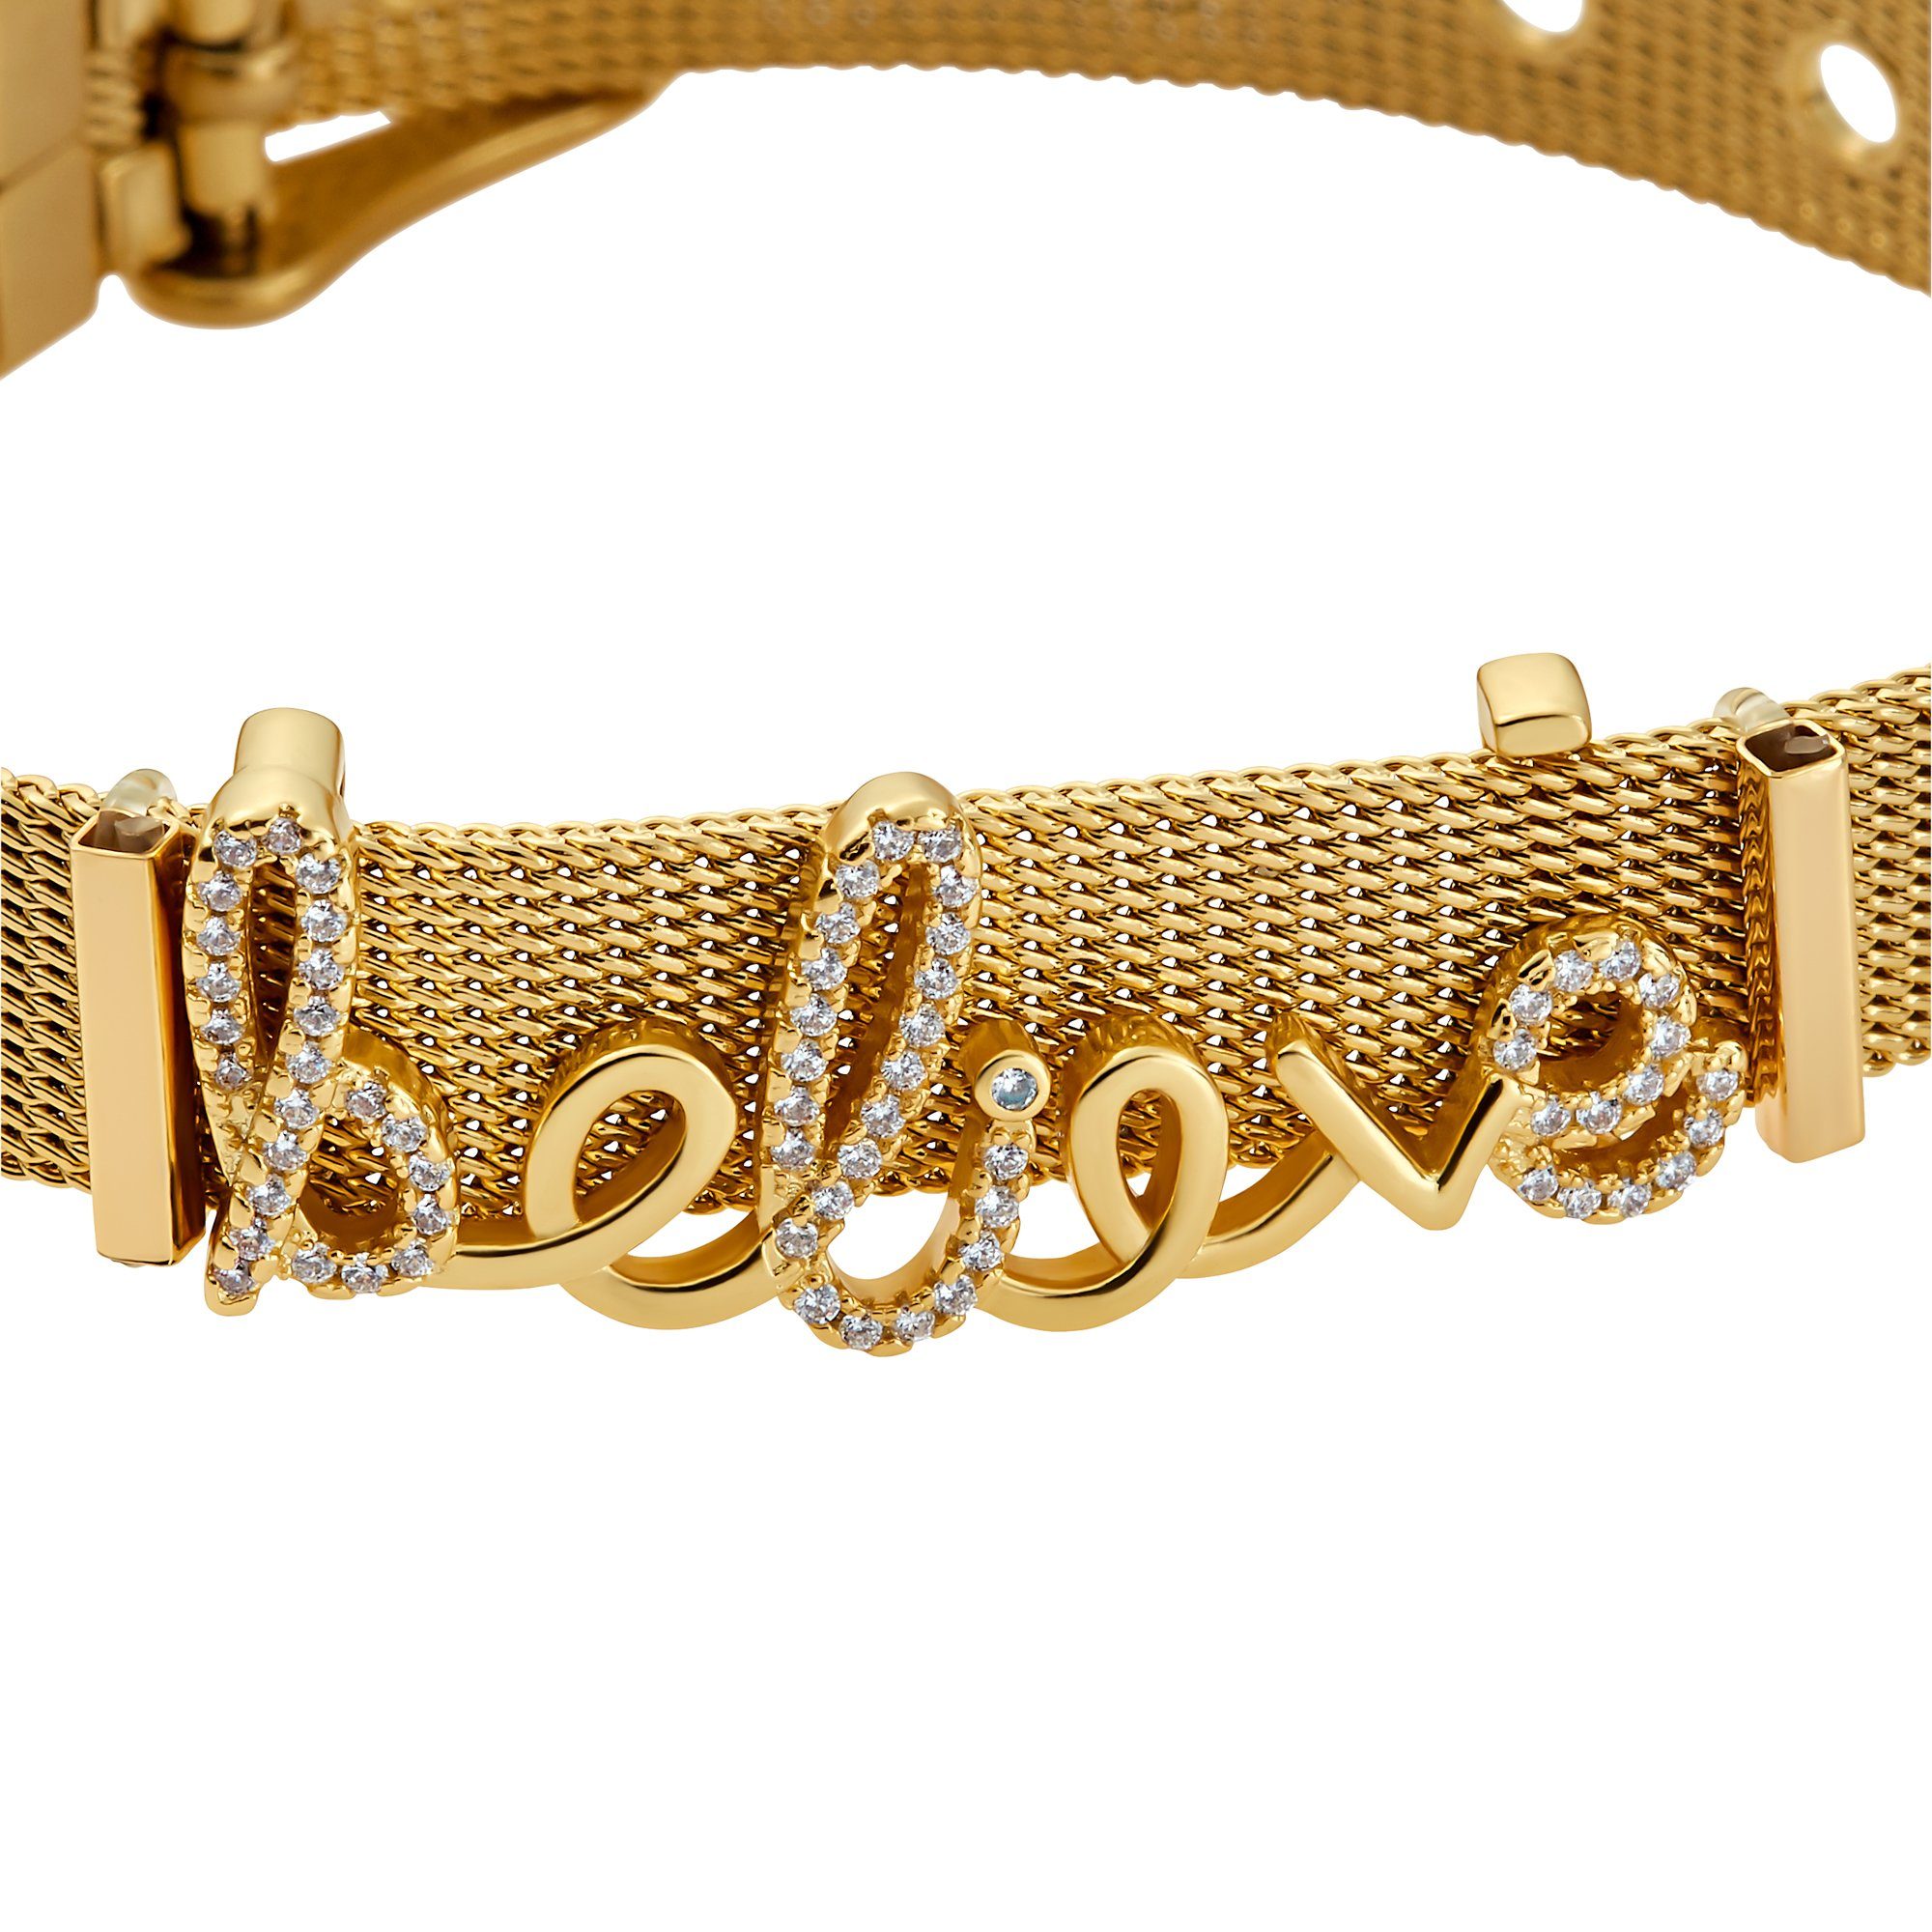 poliert austauschbar Believe Armband Mesh Armband sind goldfarben Heideman Geschenkverpackung), Charms (Armband, inkl.